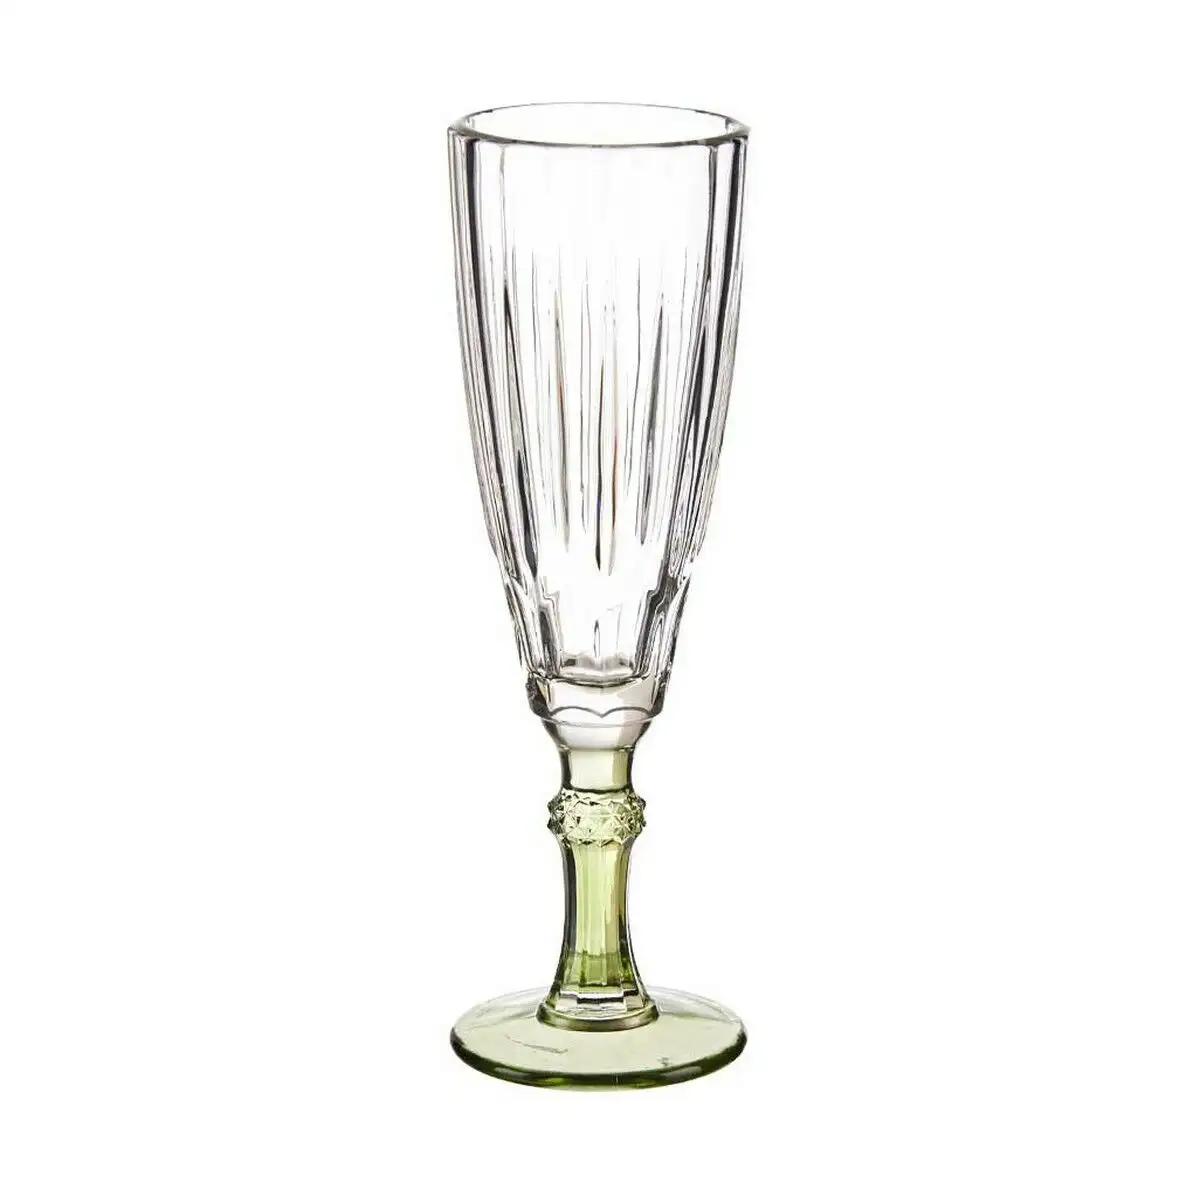 Coupe de champagne exotic verre vert 170 ml_6506. Découvrez DIAYTAR SENEGAL - Là où le Choix Rencontre la Qualité. Parcourez notre gamme diversifiée et choisissez parmi des produits conçus pour exceller dans tous les aspects de votre vie.